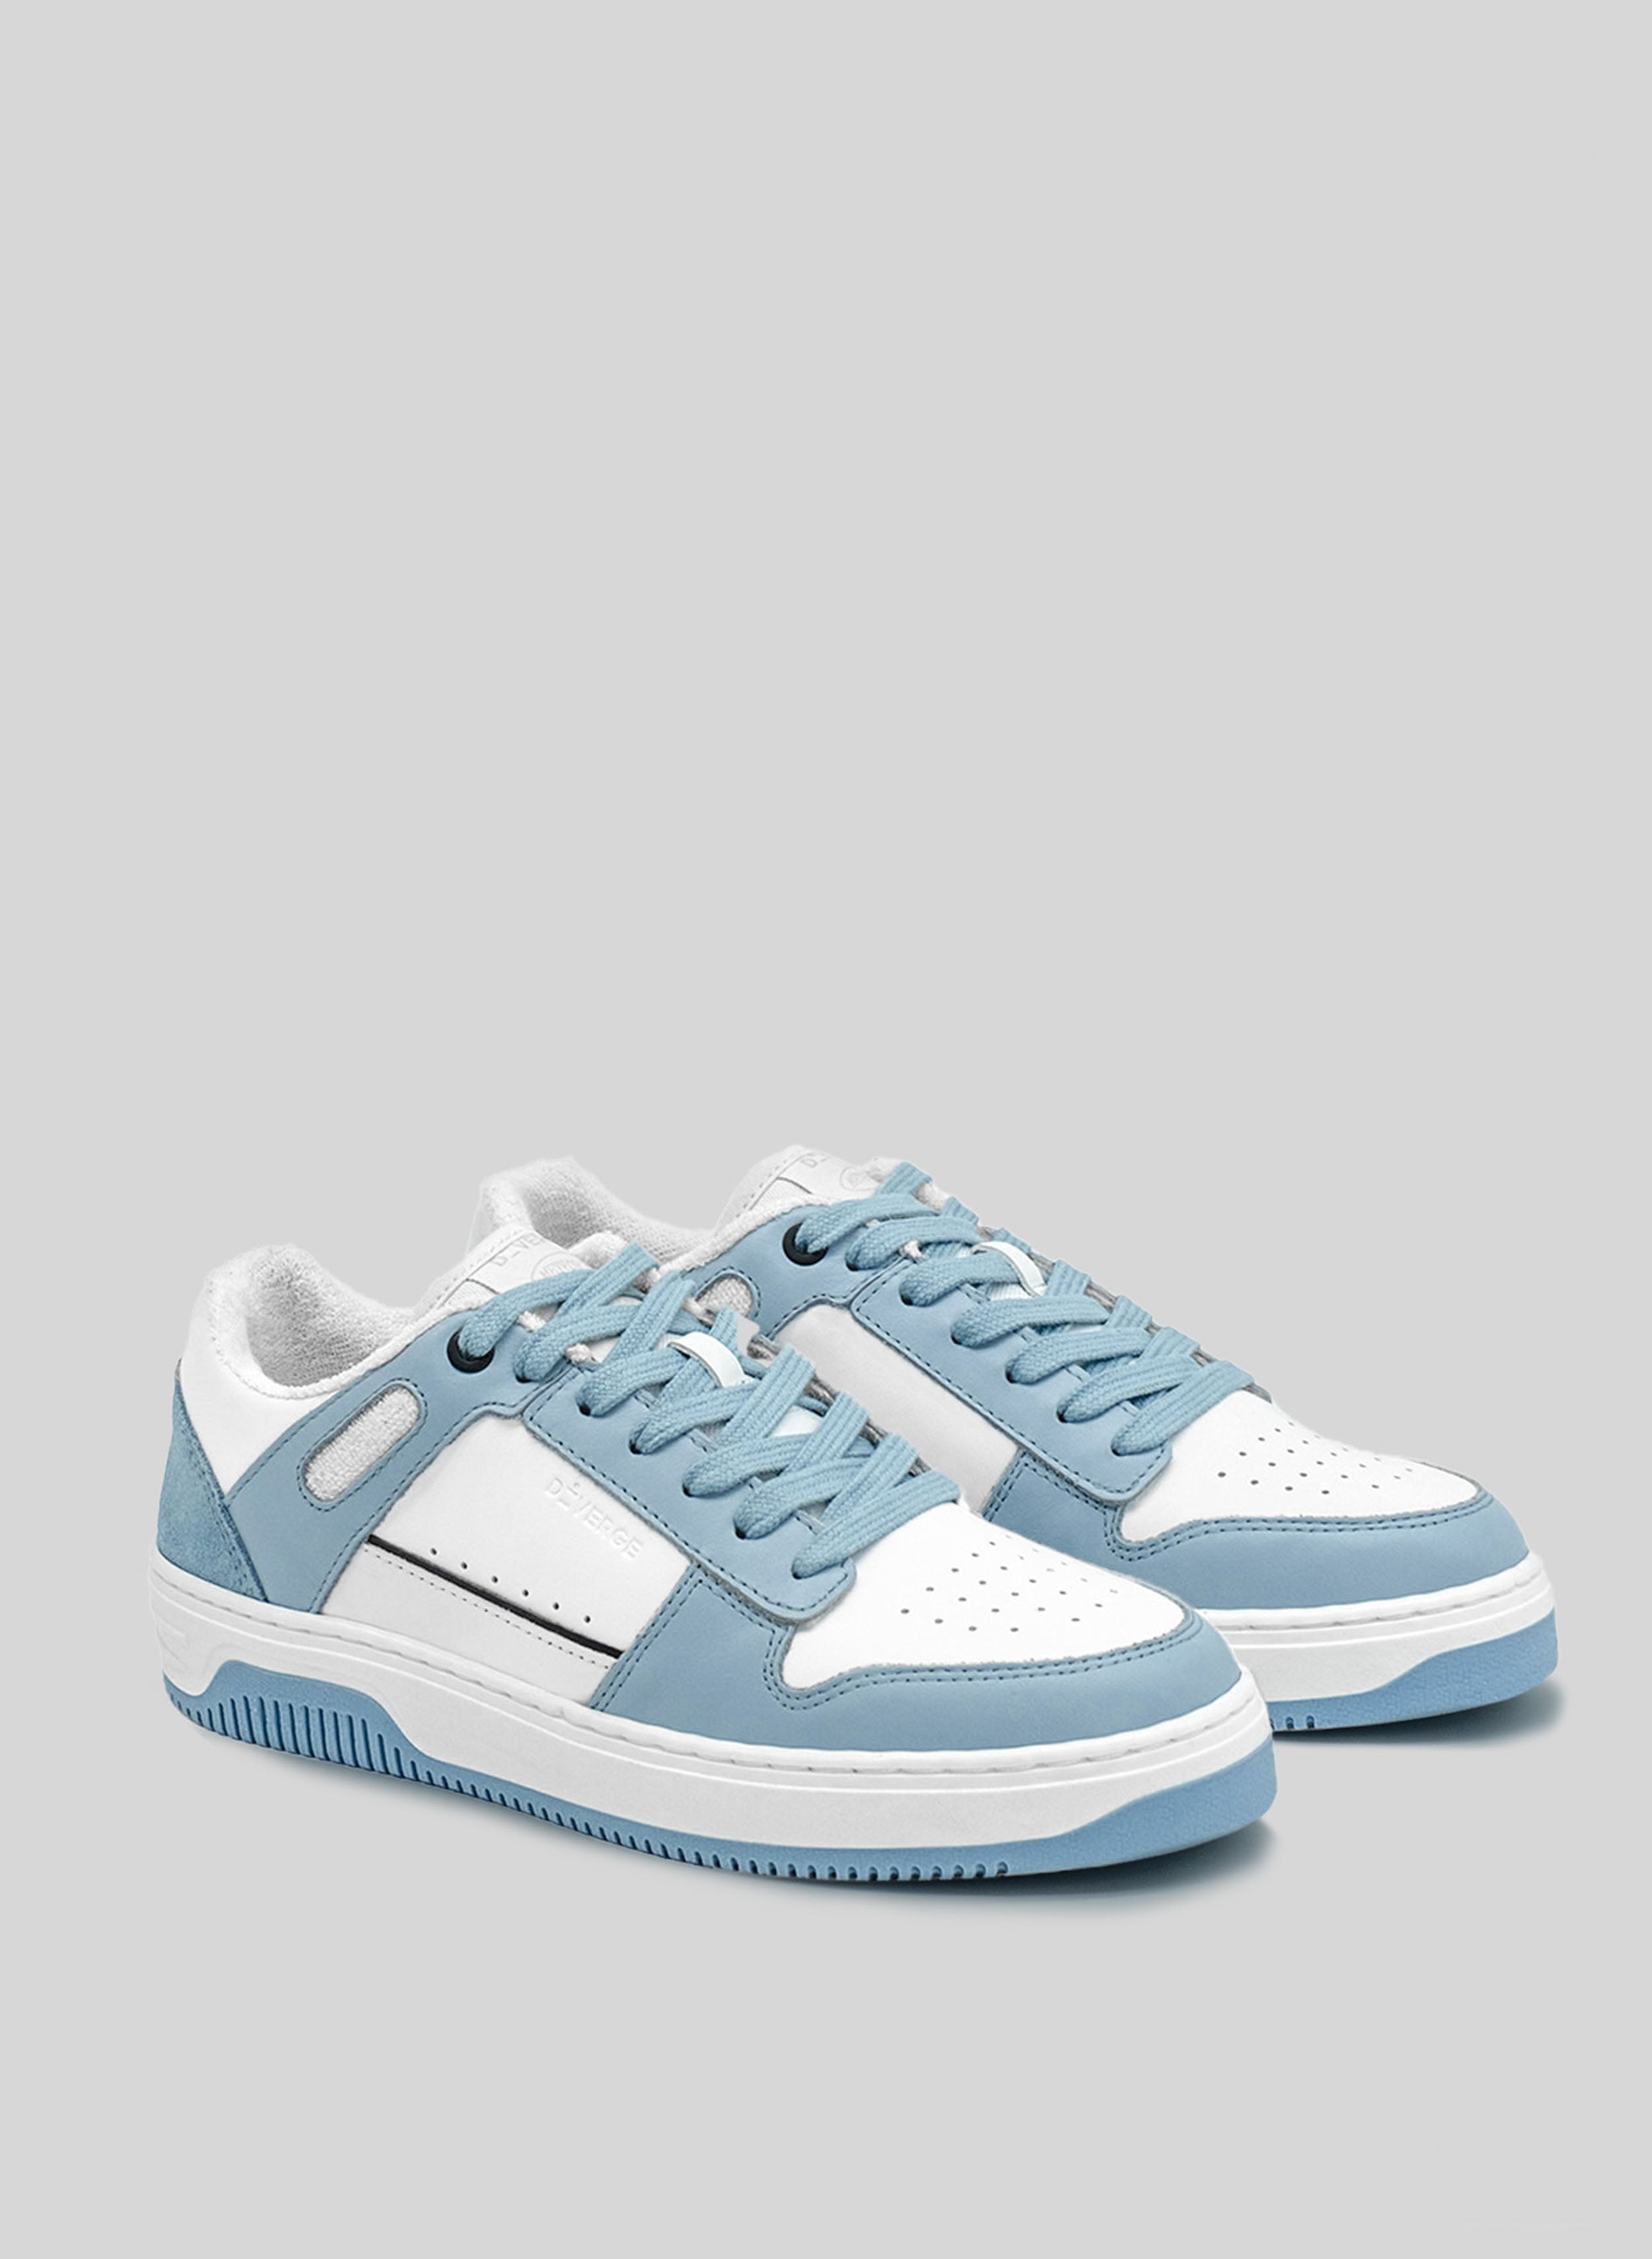 sneakers bleu avec semelle blanche et bleue par Diverge, promouvant l'impact social et les chaussures personnalisées à travers le projet imagine. 